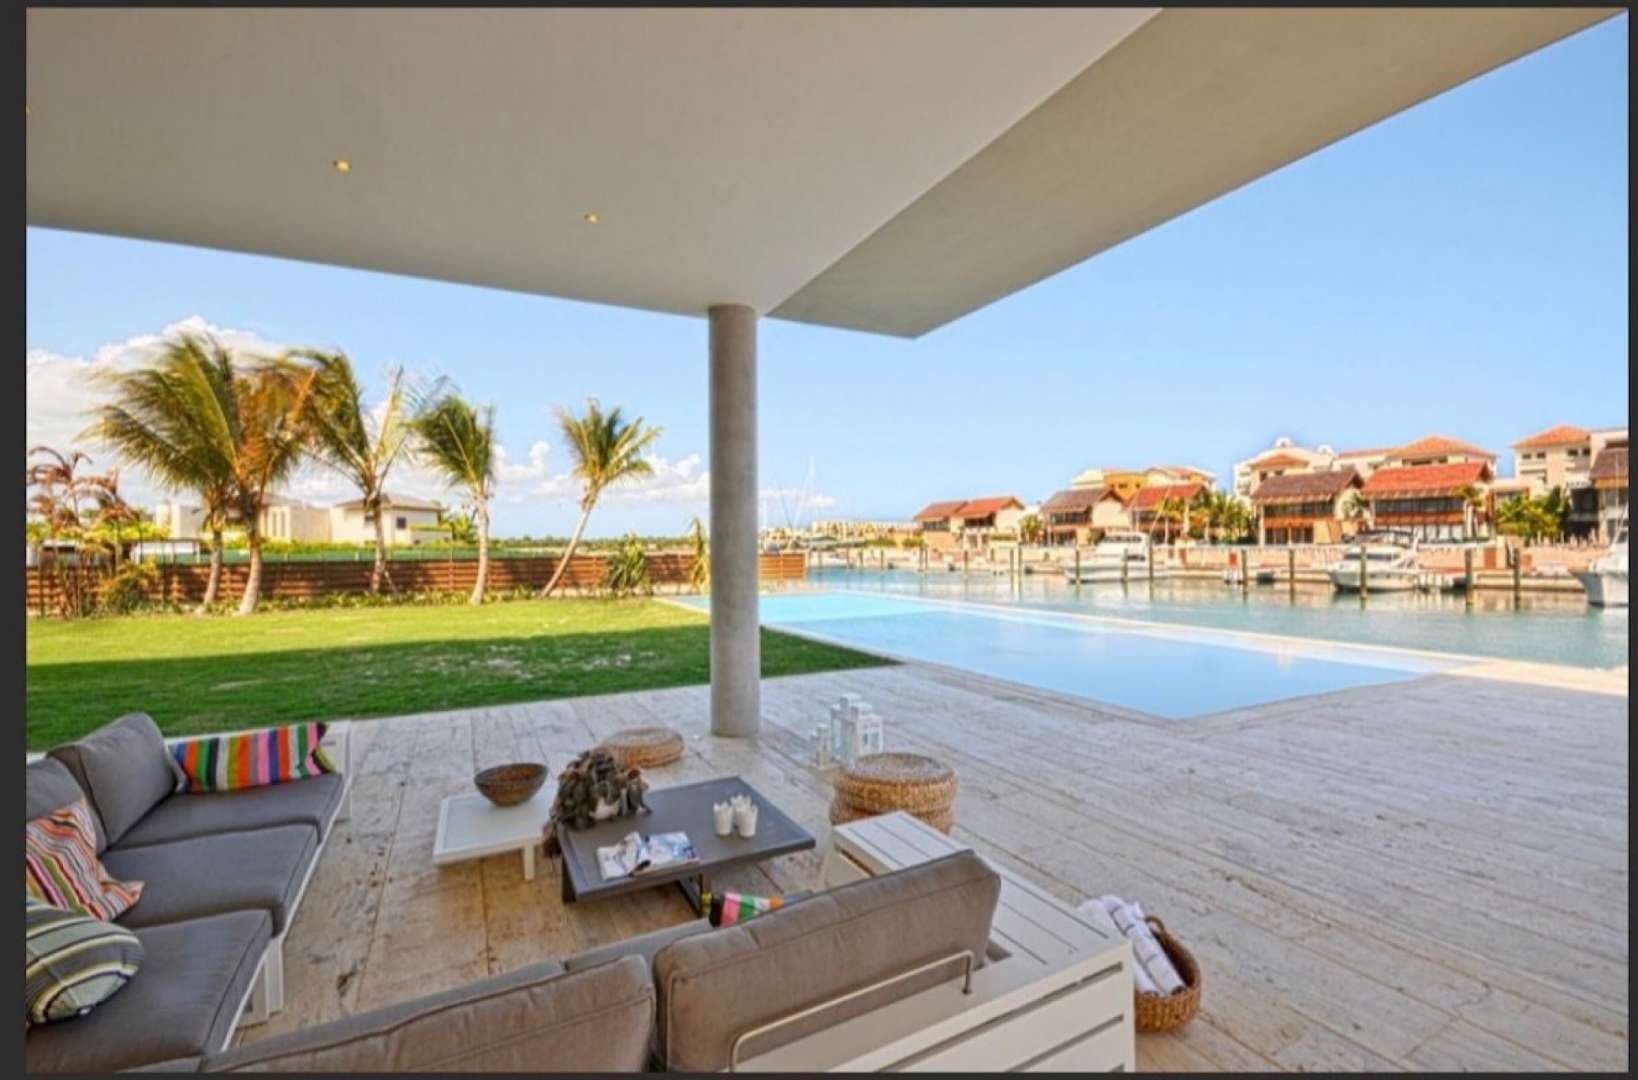  Bedroom Villa For Sale Villa Increible En Casa De Campo Lp05016 29d413b2a9bbb000.jpeg